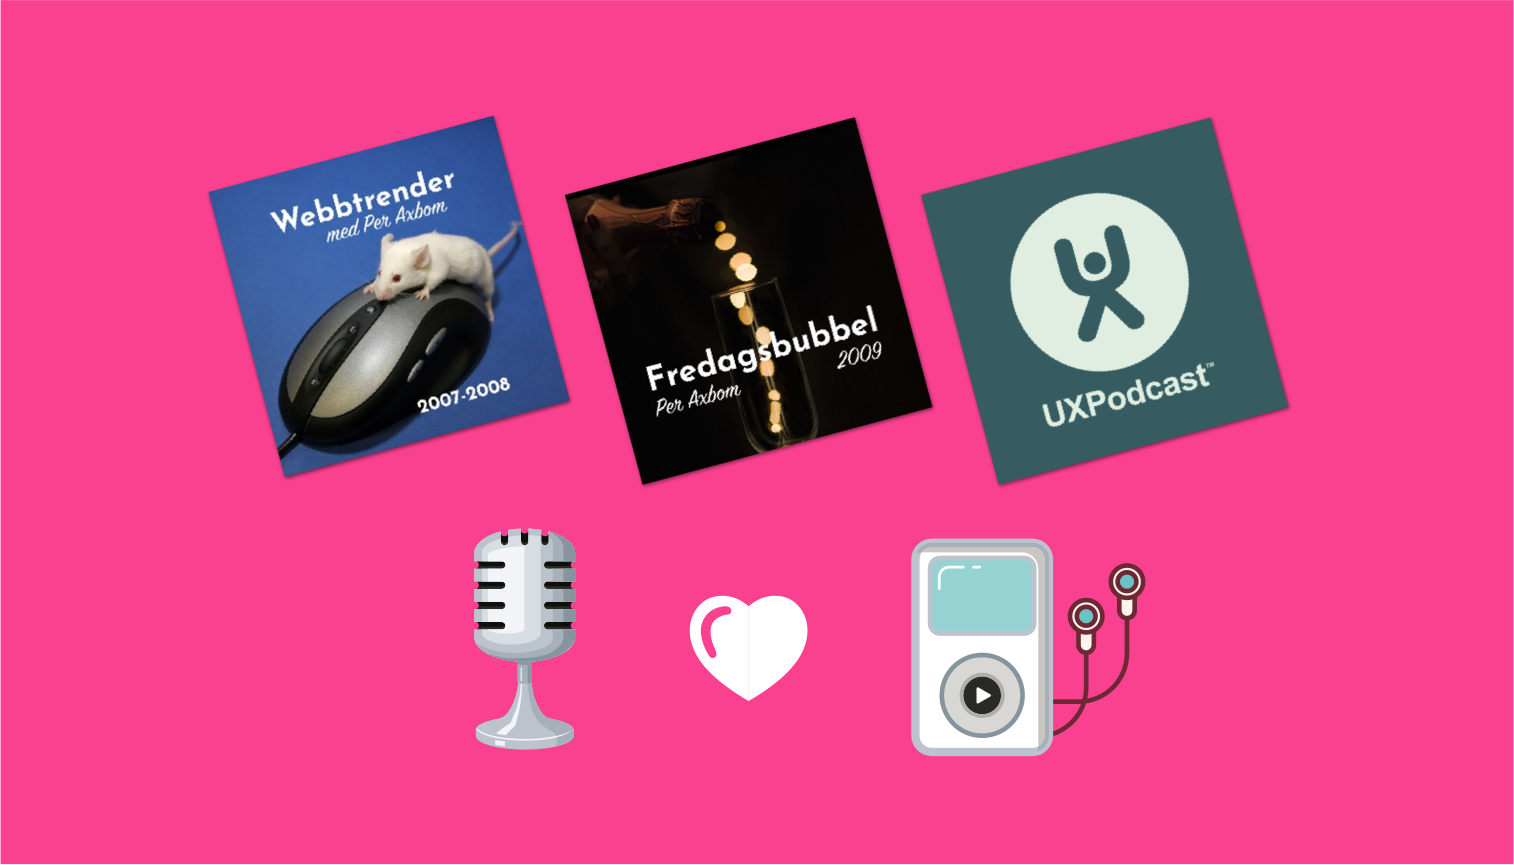 Omslagsbilder för Webbtrender, Fredagsbubbel och UX Podcast. Ikoner för mikrofon, hjärta och iPod.